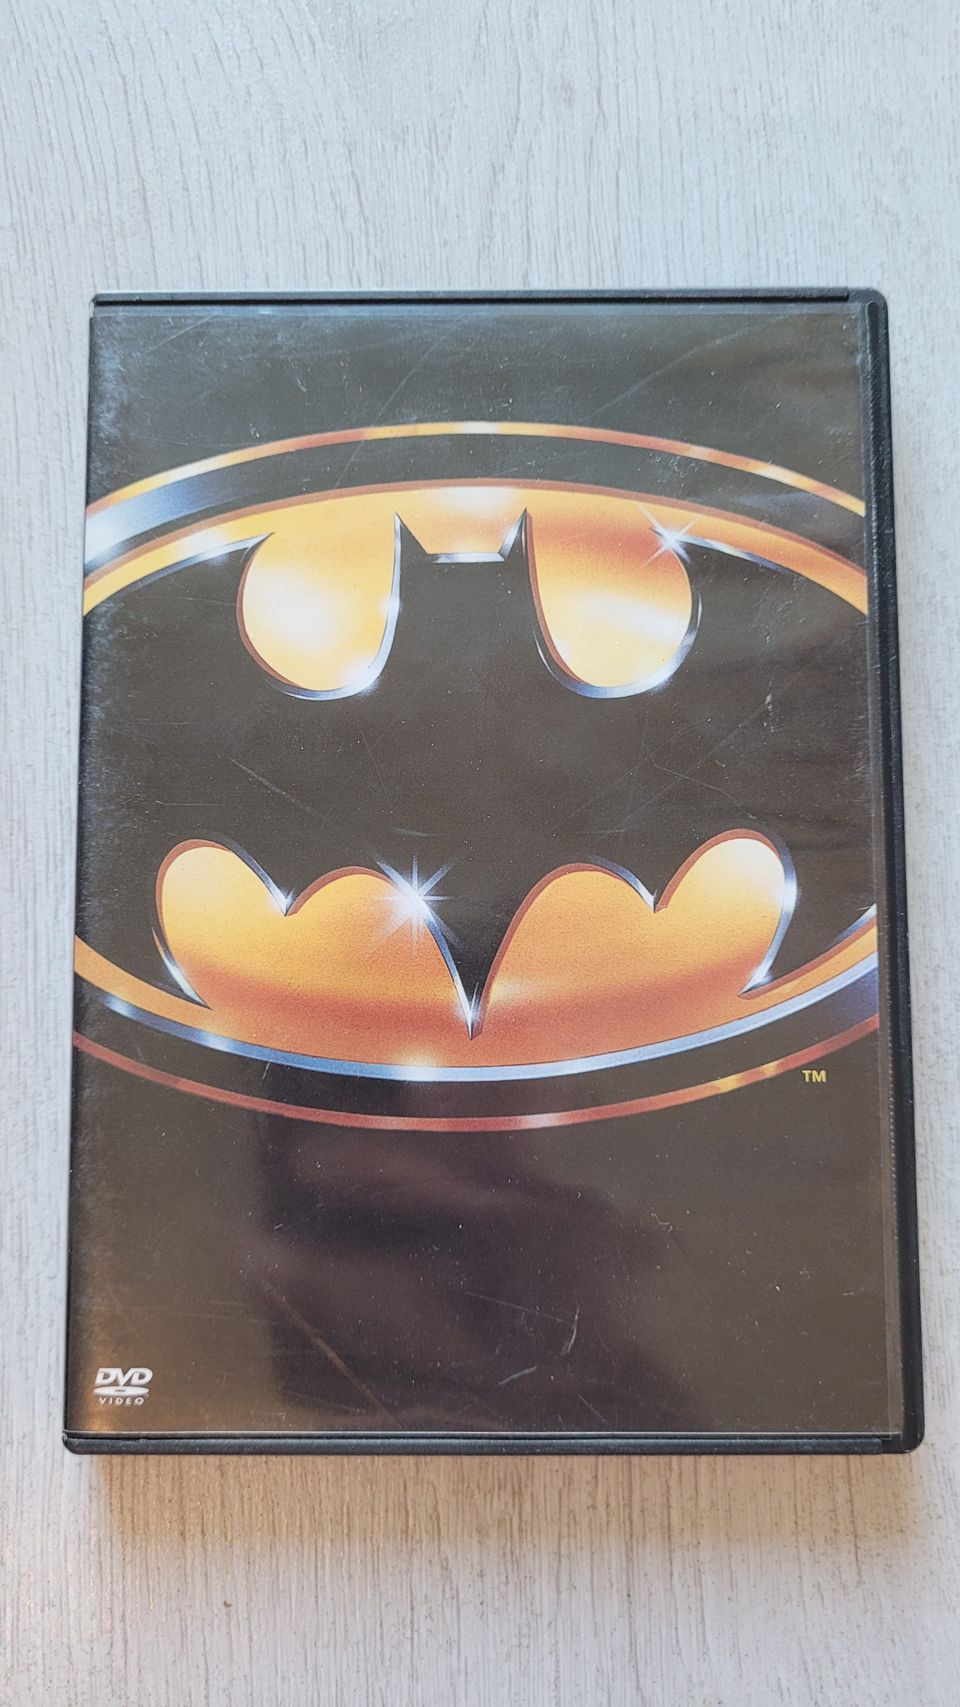 Batman (1989) DVD